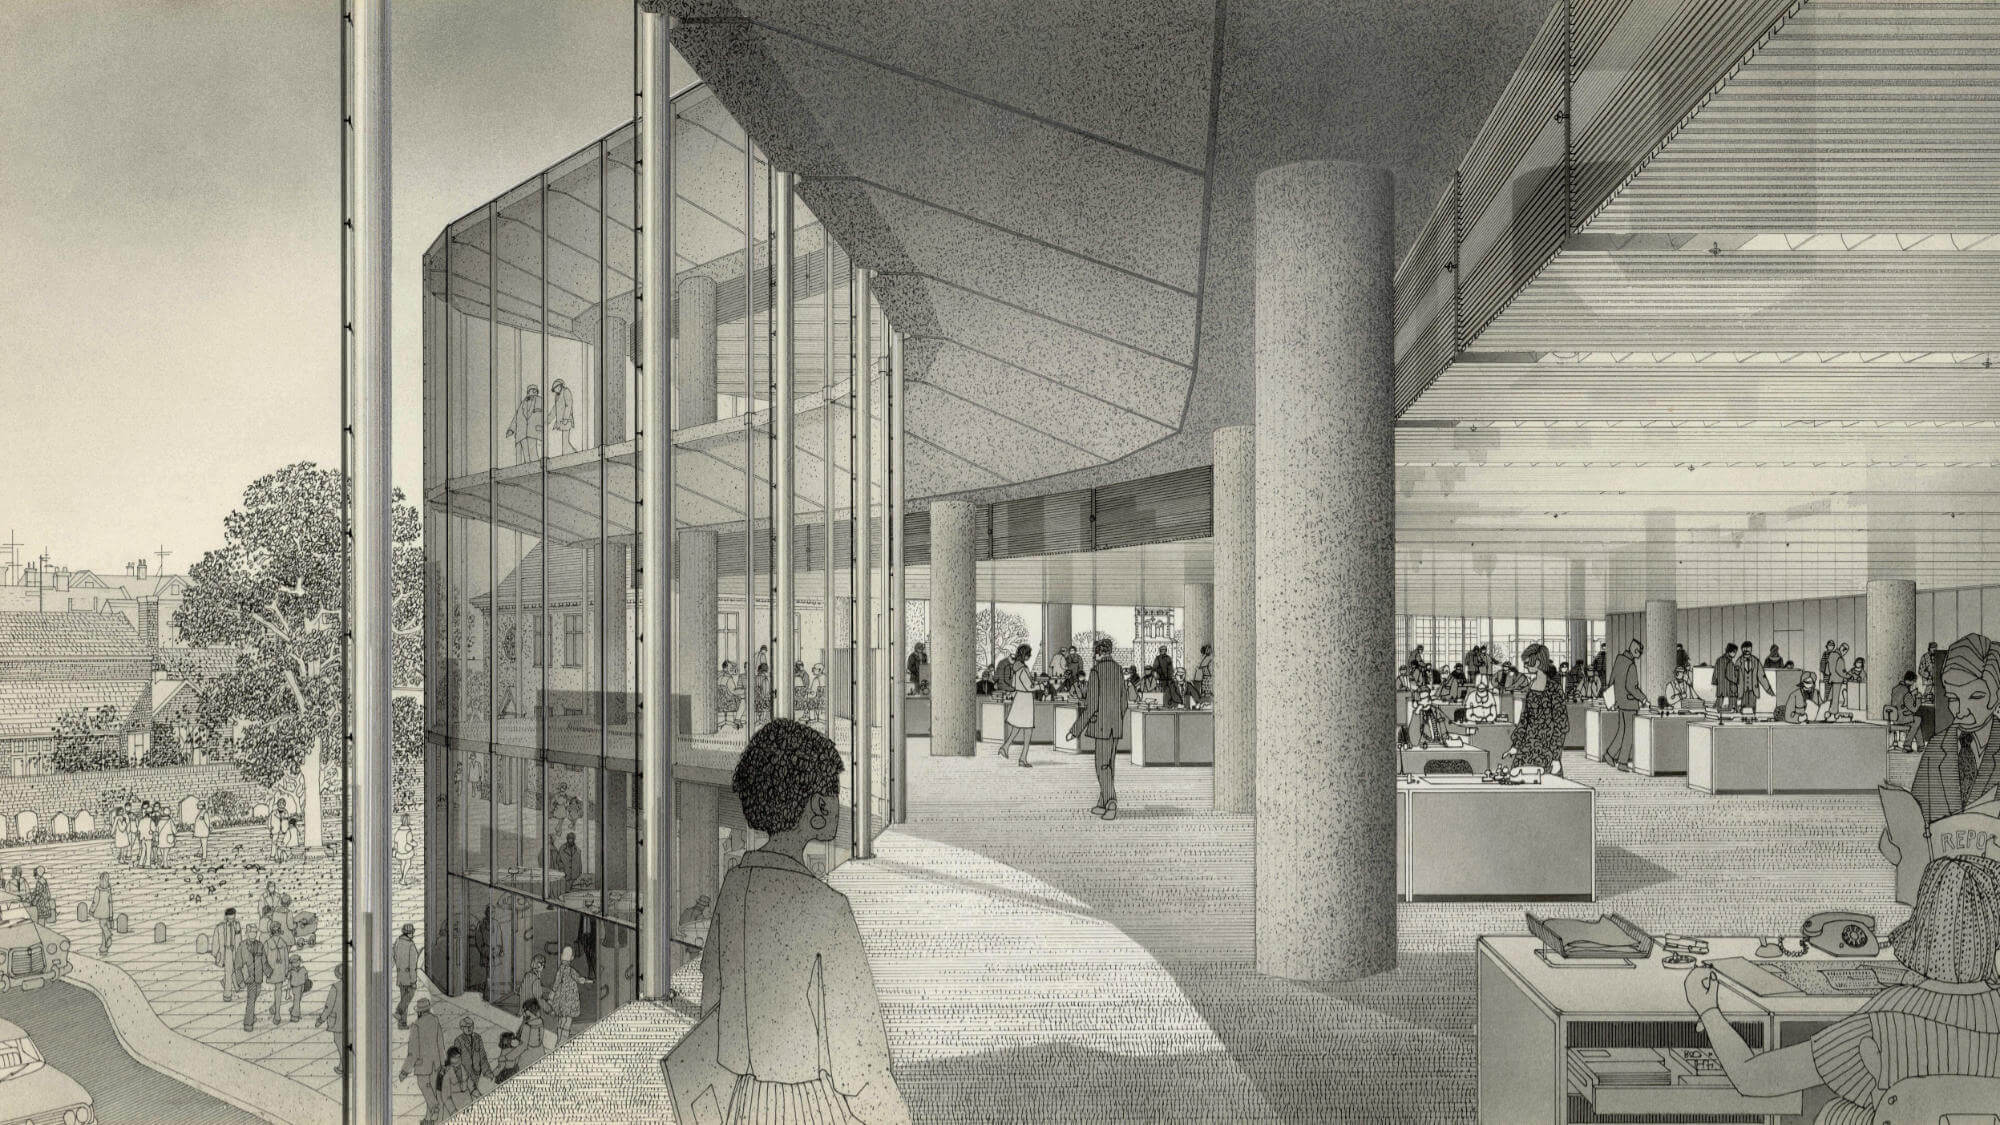 Architekturzeichnung Großraumbüro mit Glasfassade